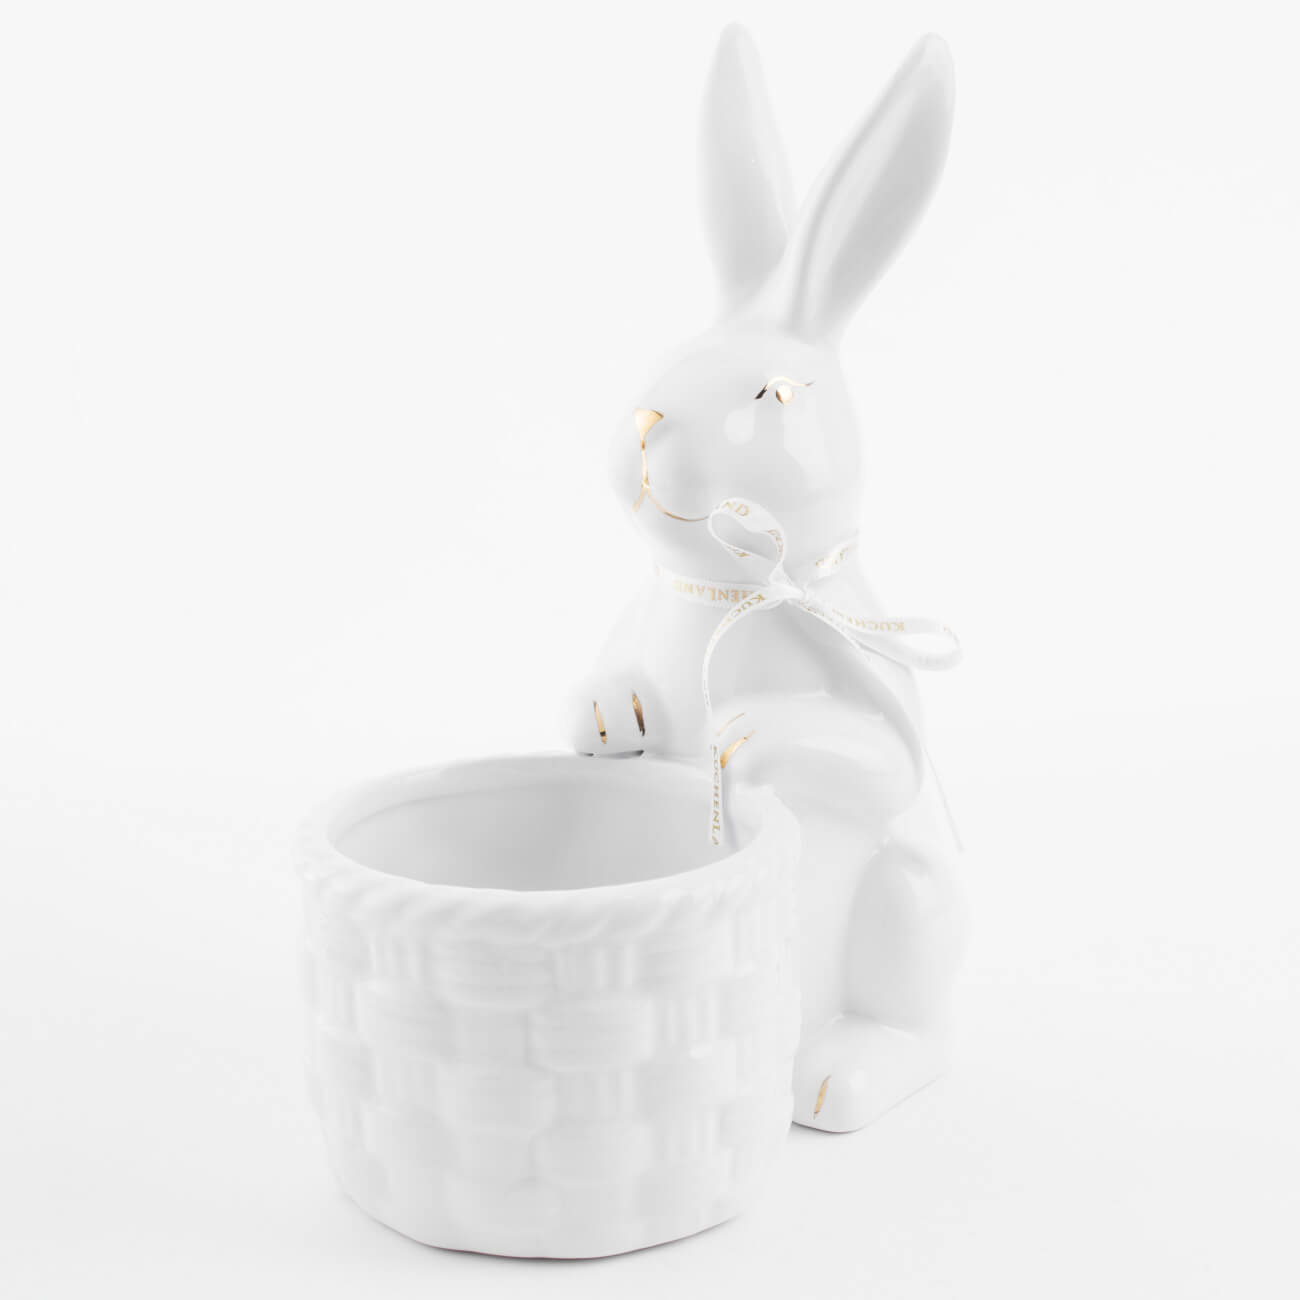 Конфетница, 18x23 см, керамика, бело-золотистая, Кролик с плетенной корзиной, Easter gold масленка 22 см керамика прямоугольная белая кролик easter gold